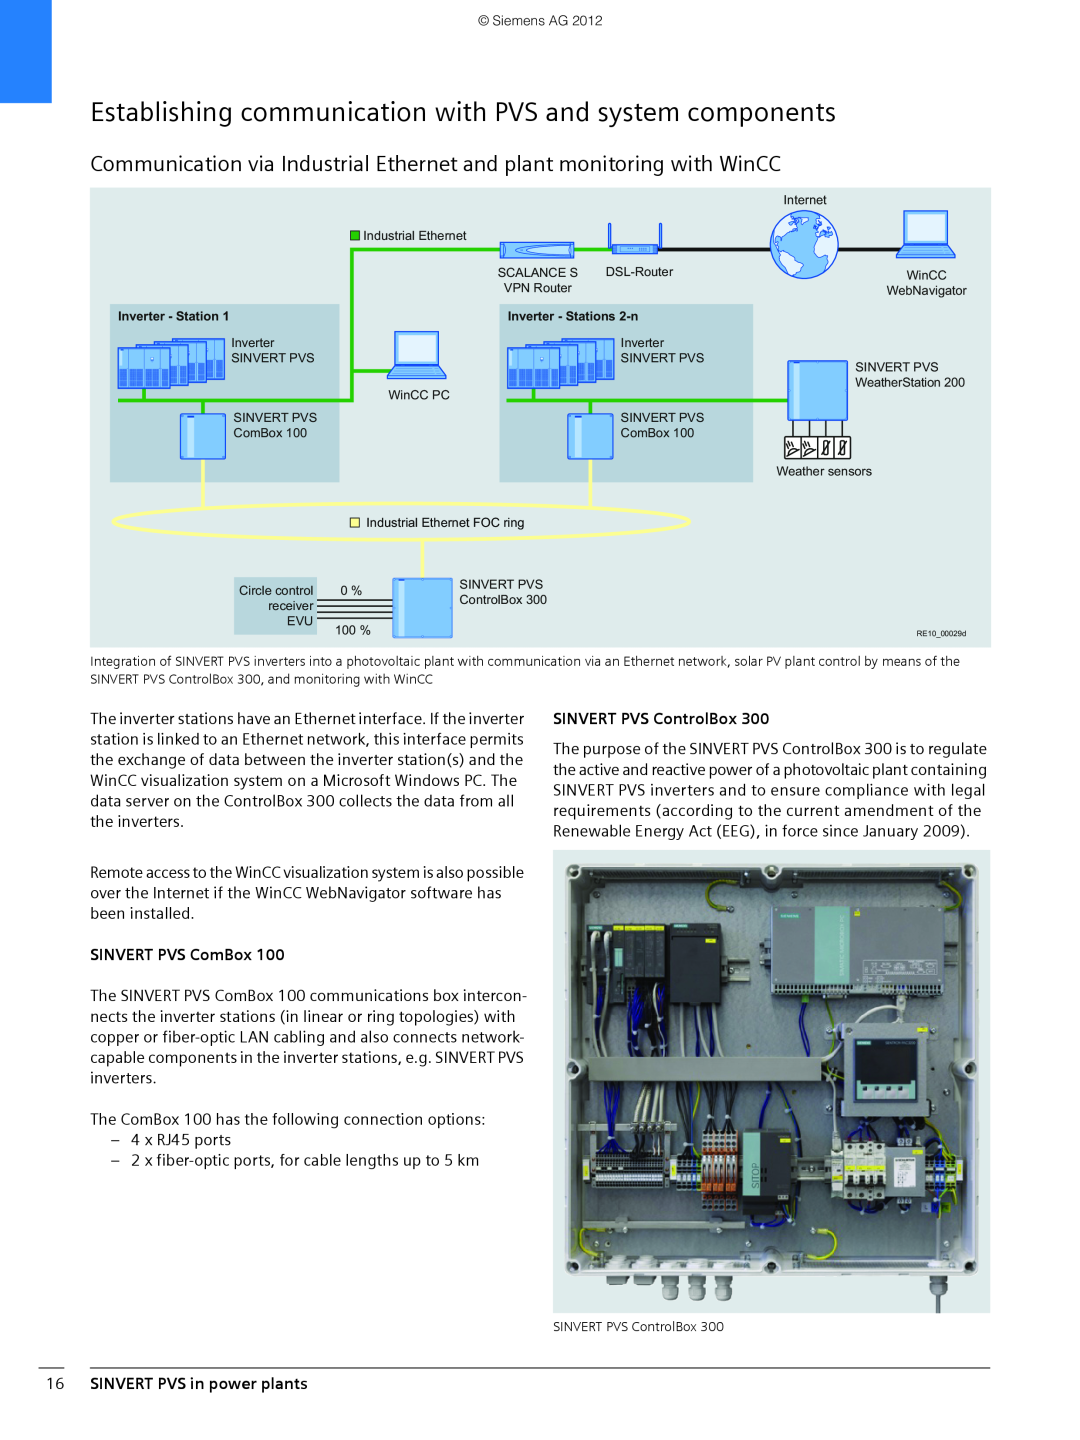 Siemens 600 brochure SINVERT PVS ComBox, SINVERT PVS ControlBox, 16SINVERT PVS in power plants 